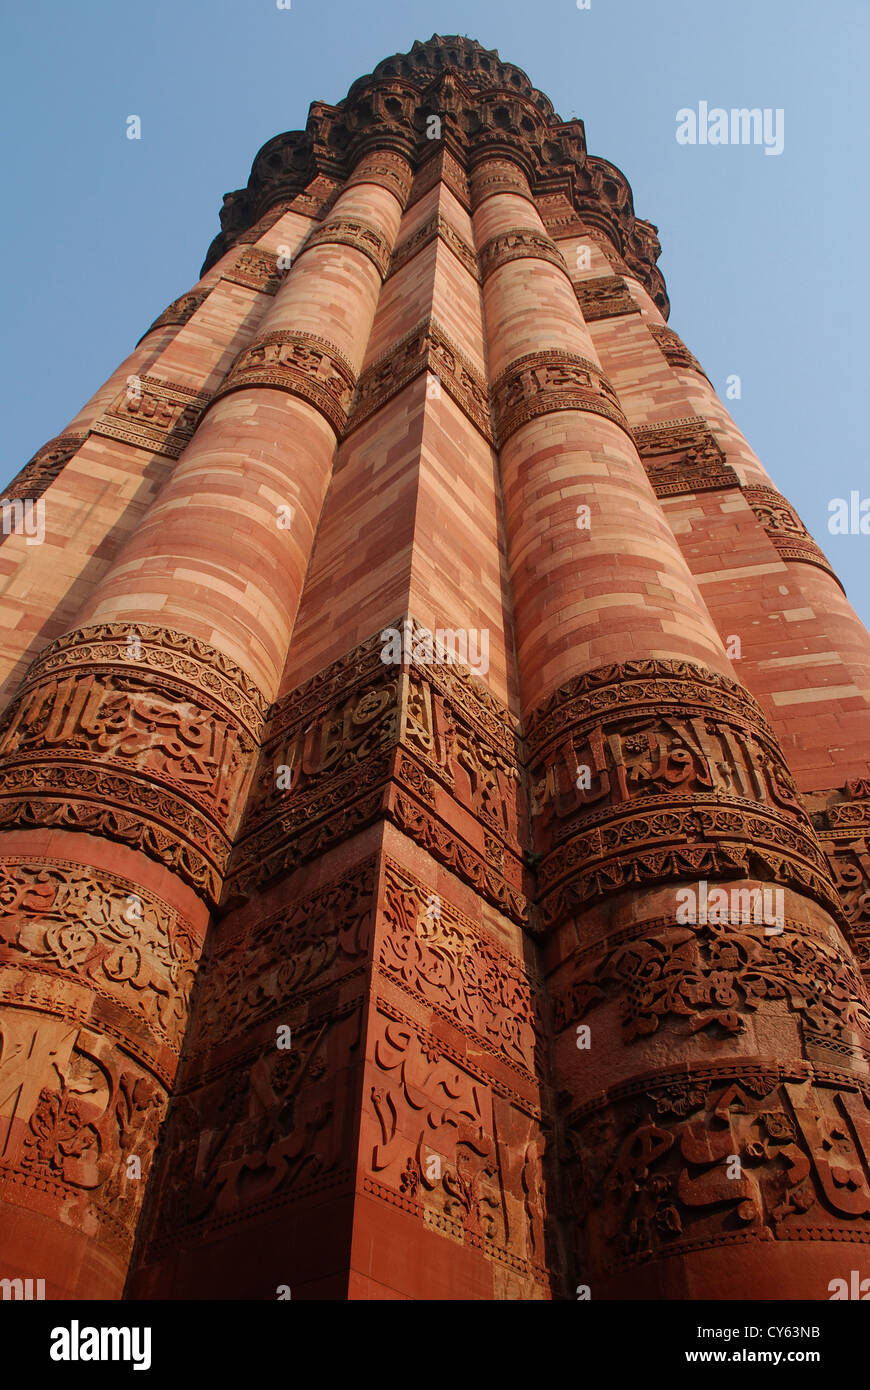 Qutb minar oder Qutab minar ist eine berühmte Moument in Delhi, Indien. Dies ist ein UNESCO-Weltkulturerbe. Stockfoto